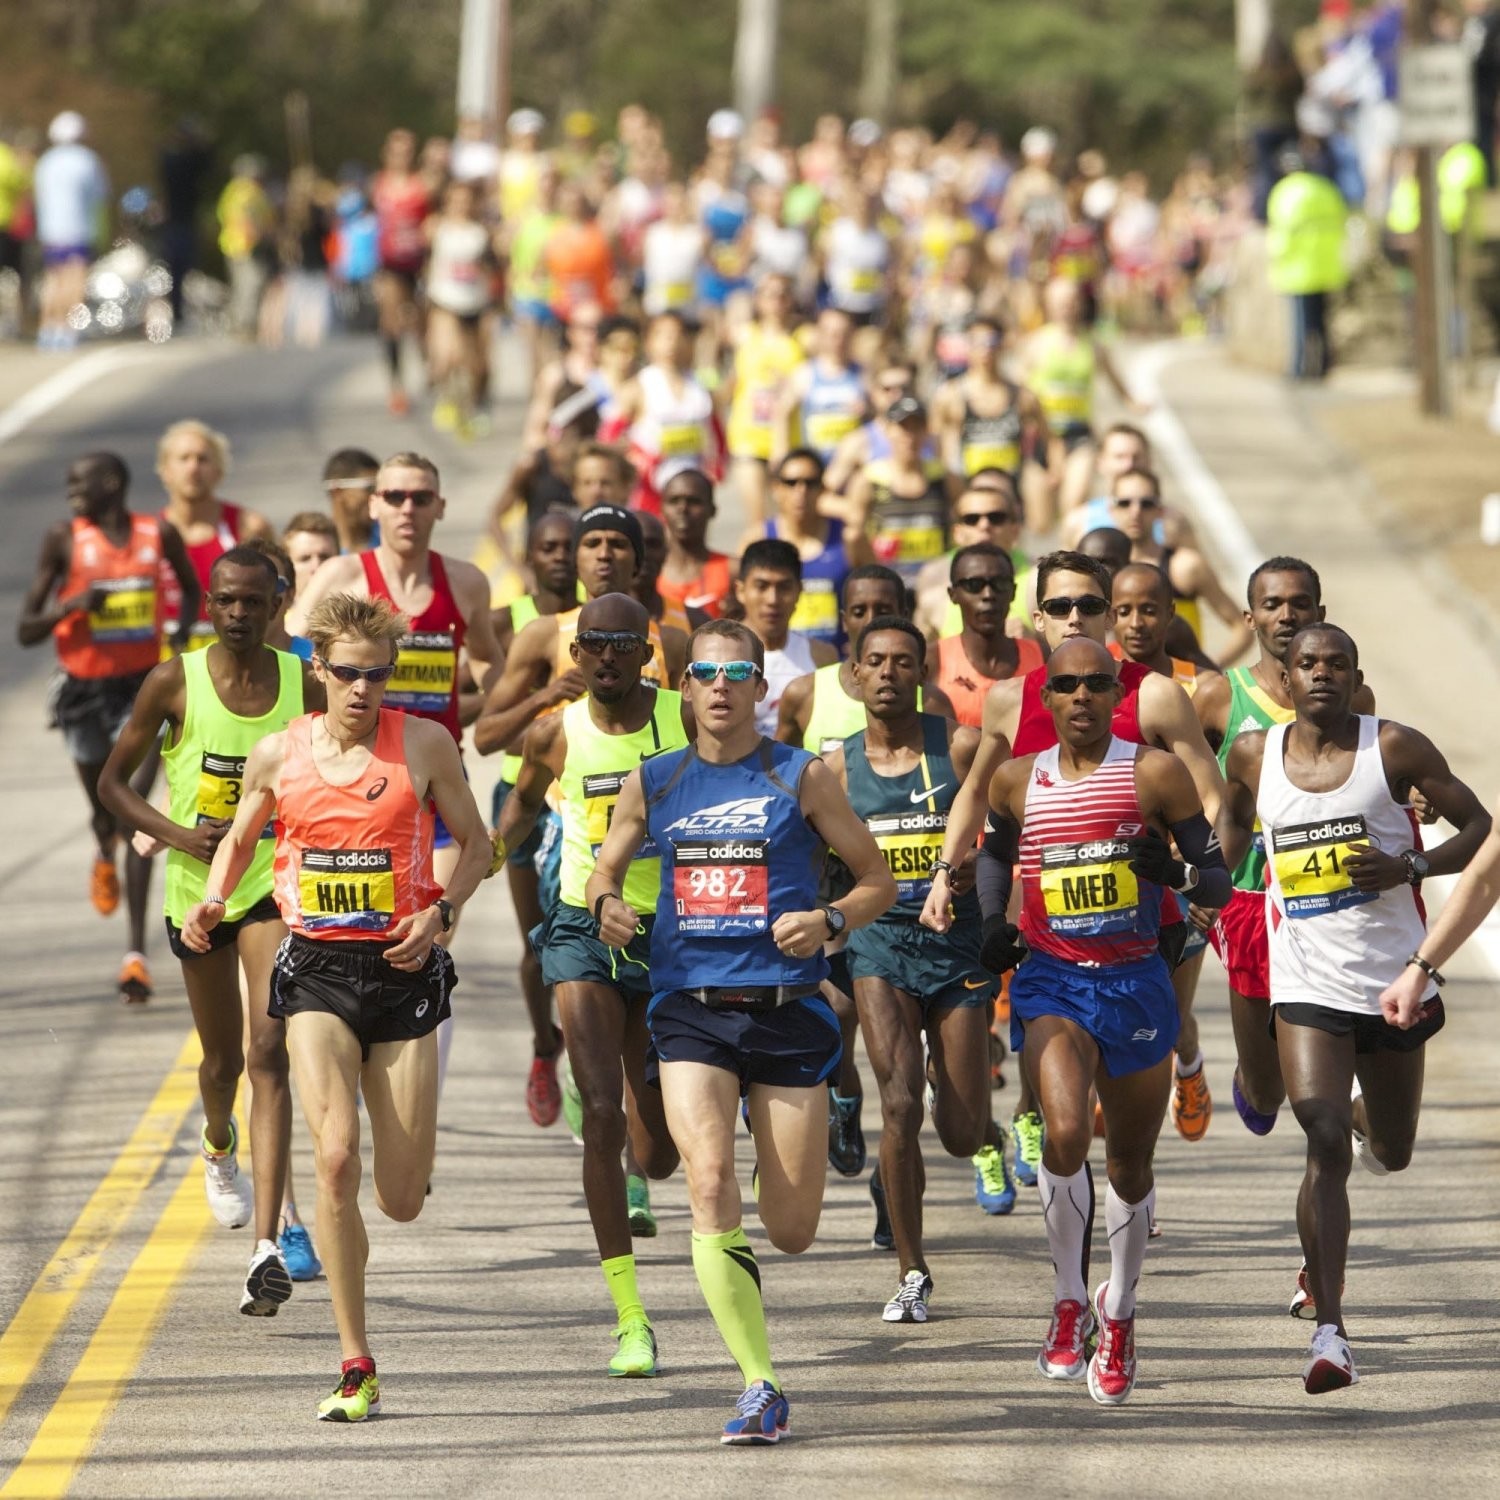 2021 Austin Marathon has been postponed due to the coronavirus